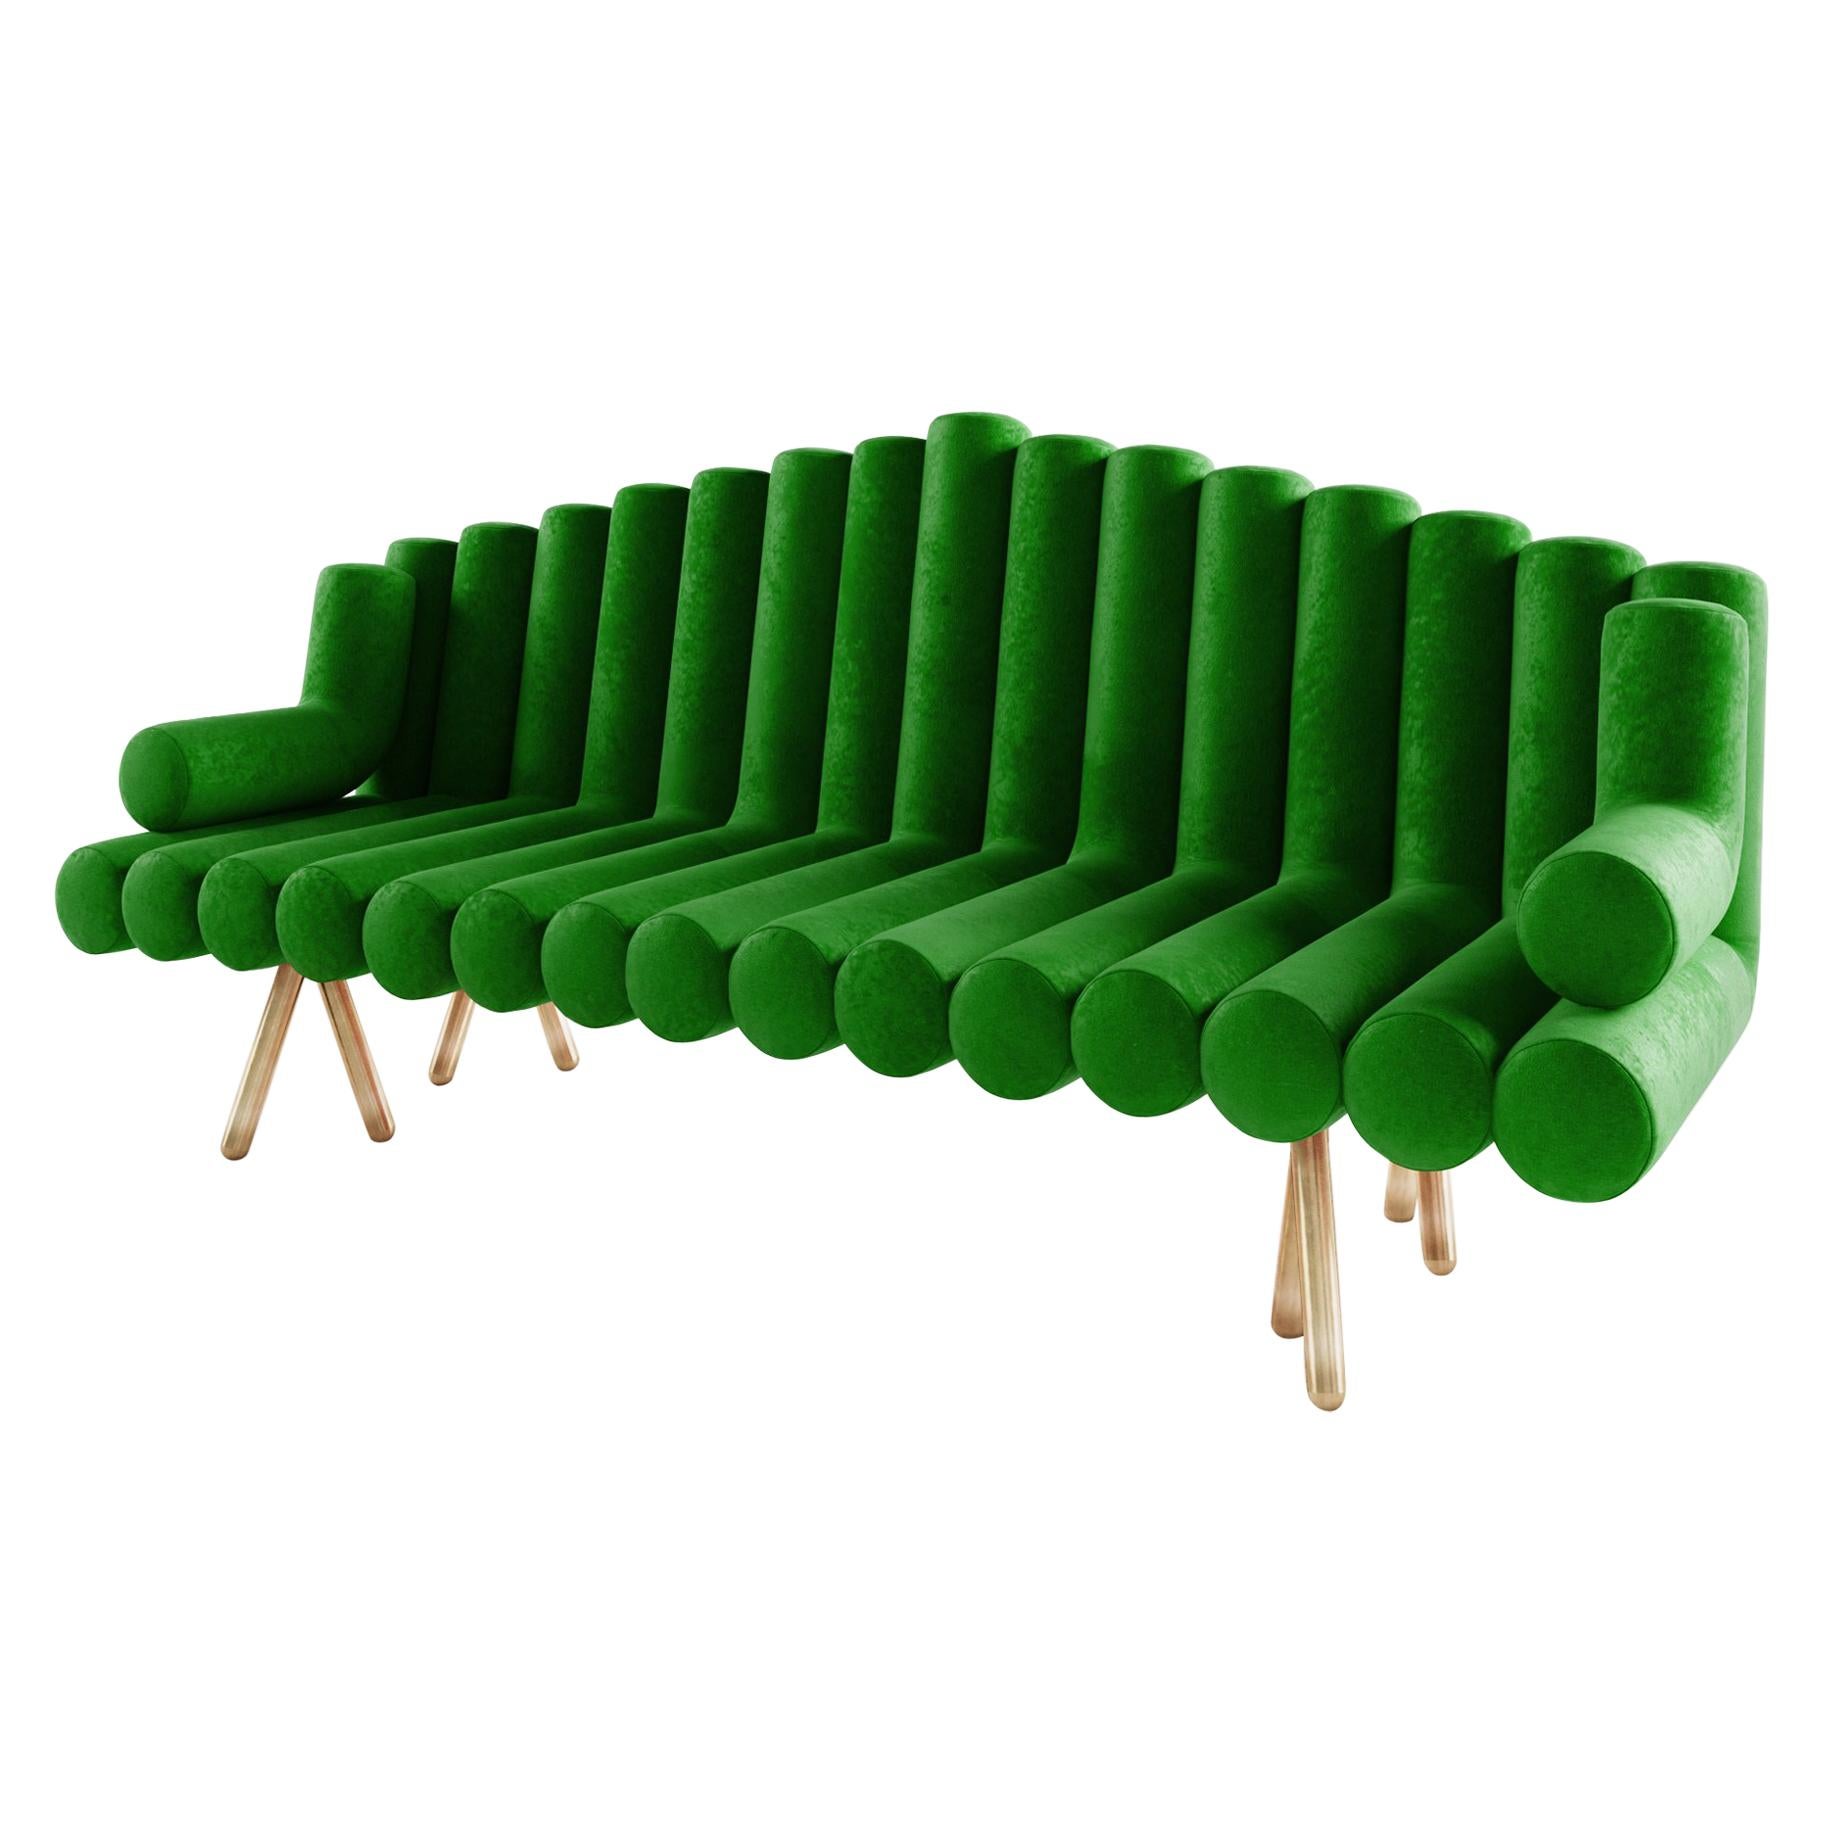 Das Flute Sofa ist von der Panflöte inspiriert. Das Flute Sofa ist einzigartig und wunderschön und gehört zu den Bestsellern von Troy Smith. Gebaut nach anspruchsvollen Standards und Qualität. Das Flötensofa ist elegant verarbeitet und langlebig.